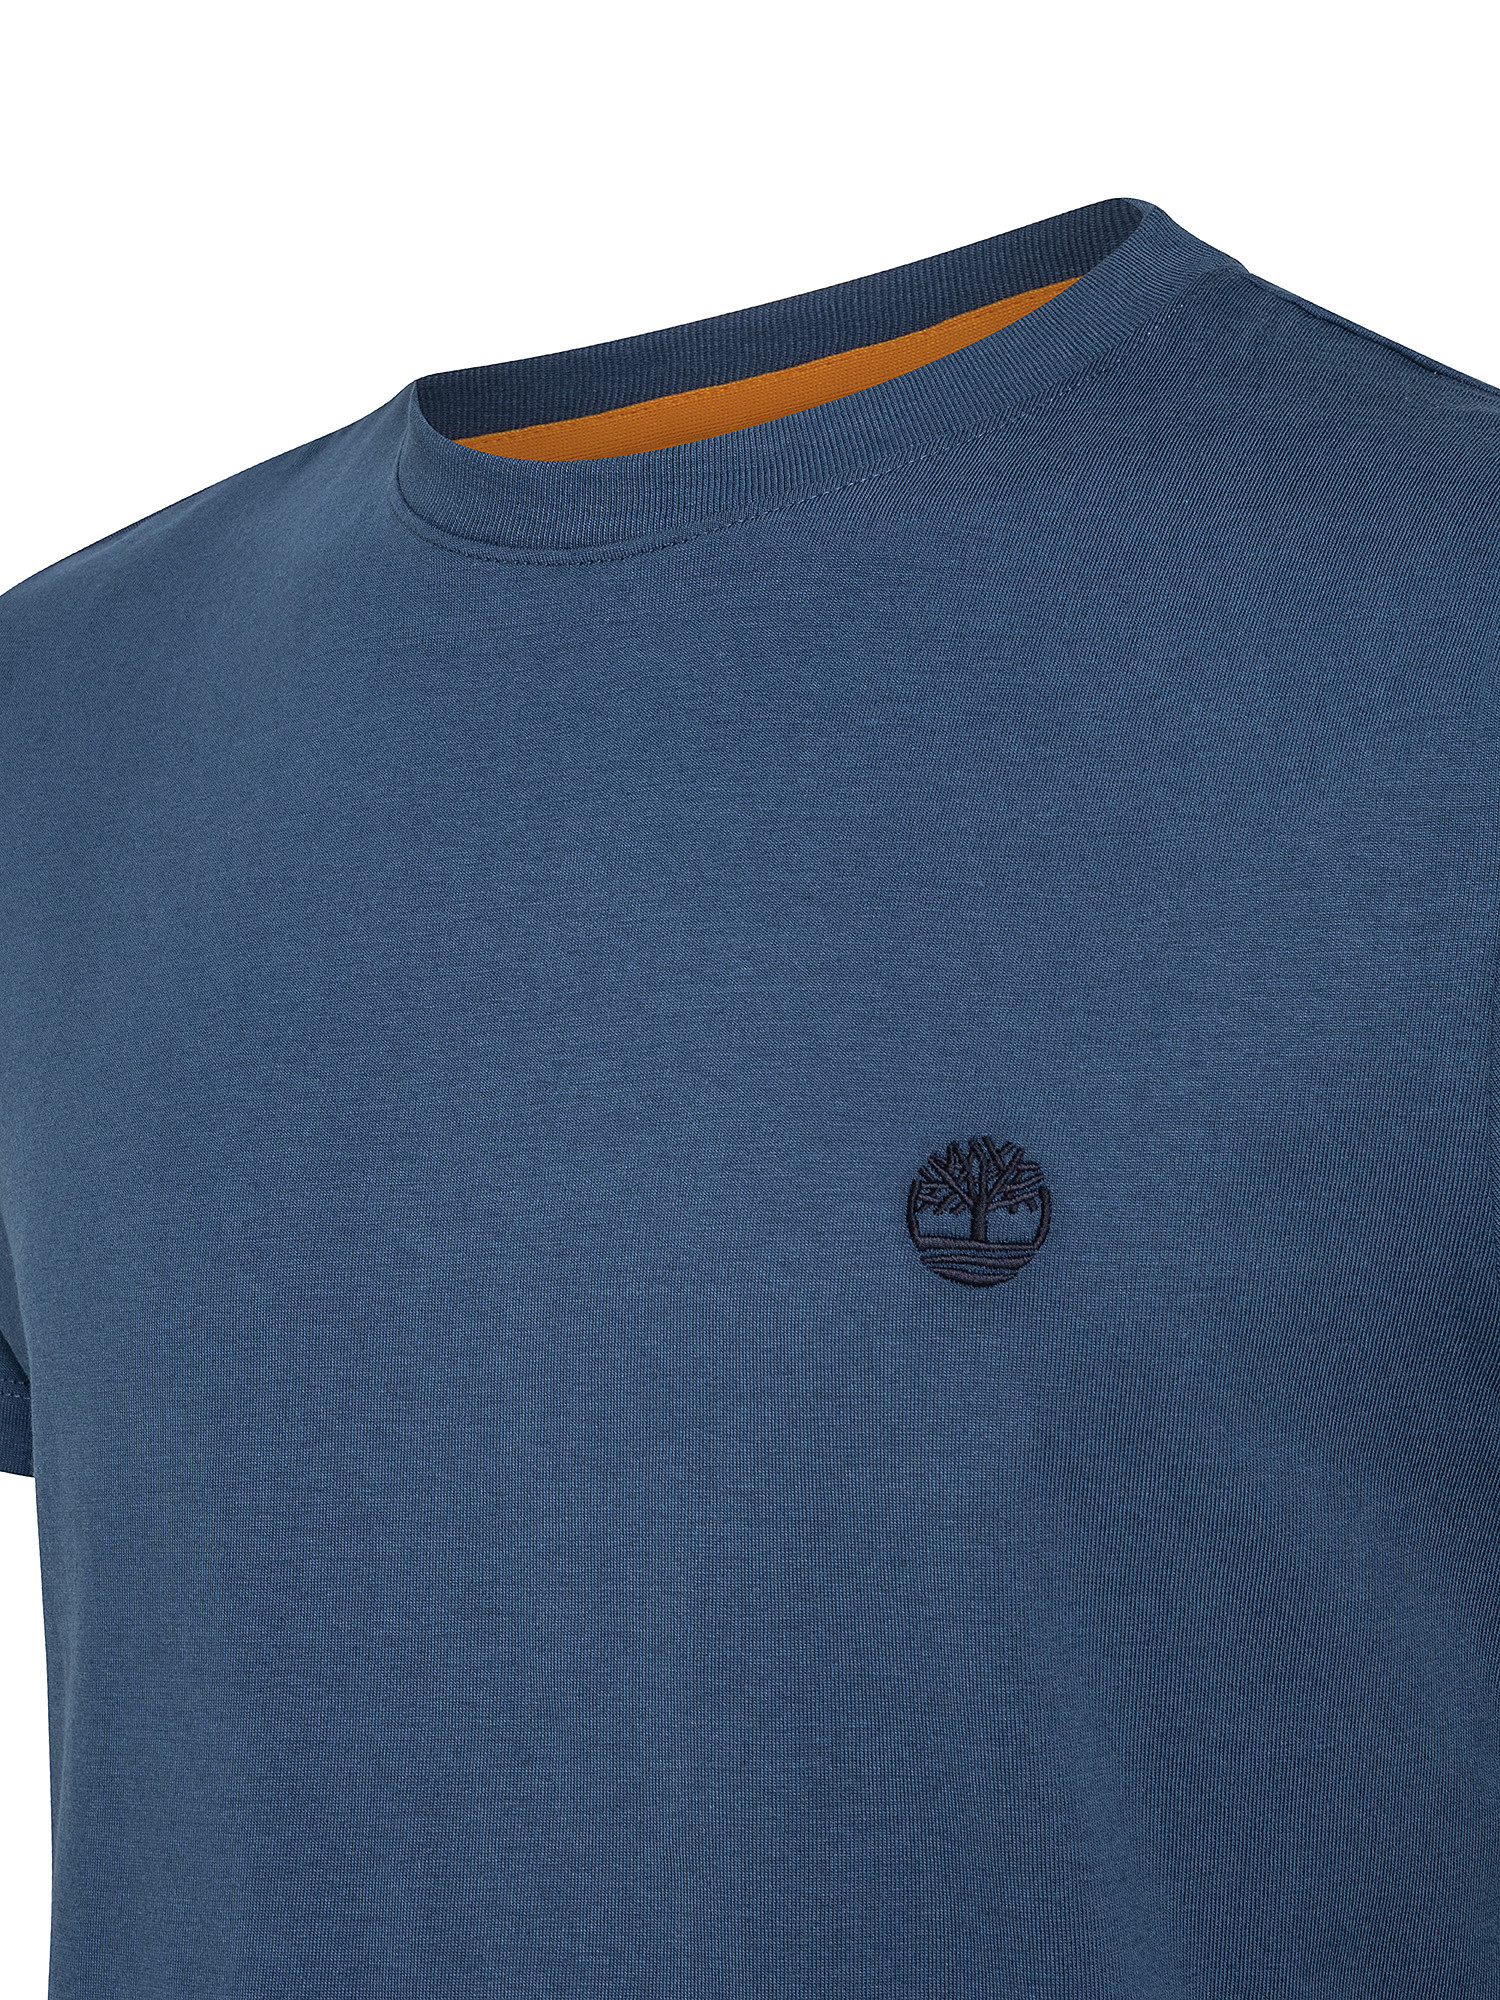 Dunstan River Men's T-Shirt, Blue, large image number 2